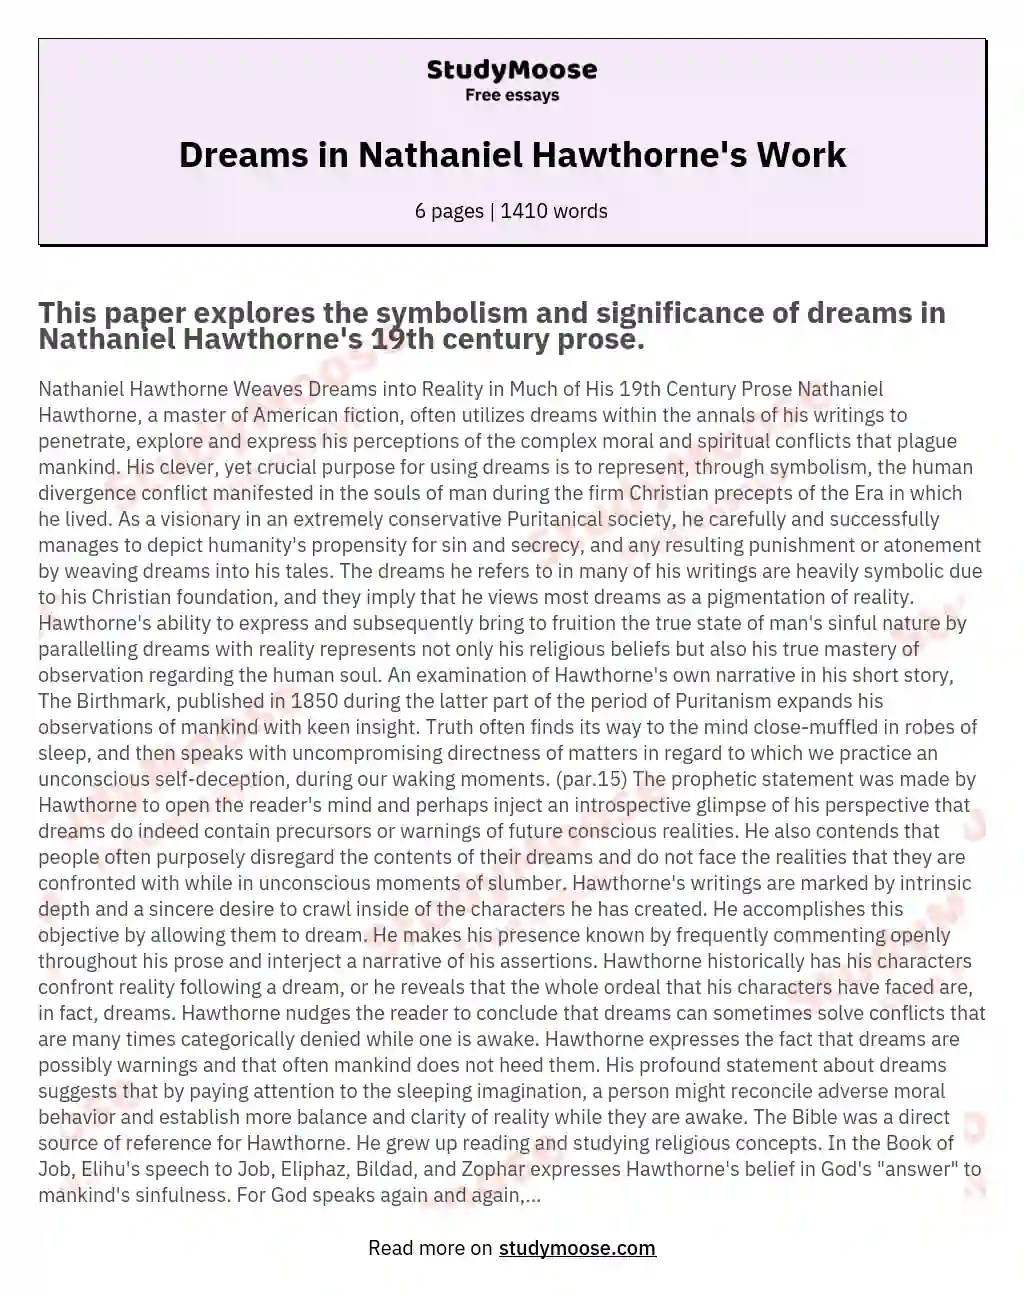 Dreams in Nathaniel Hawthorne's Work essay